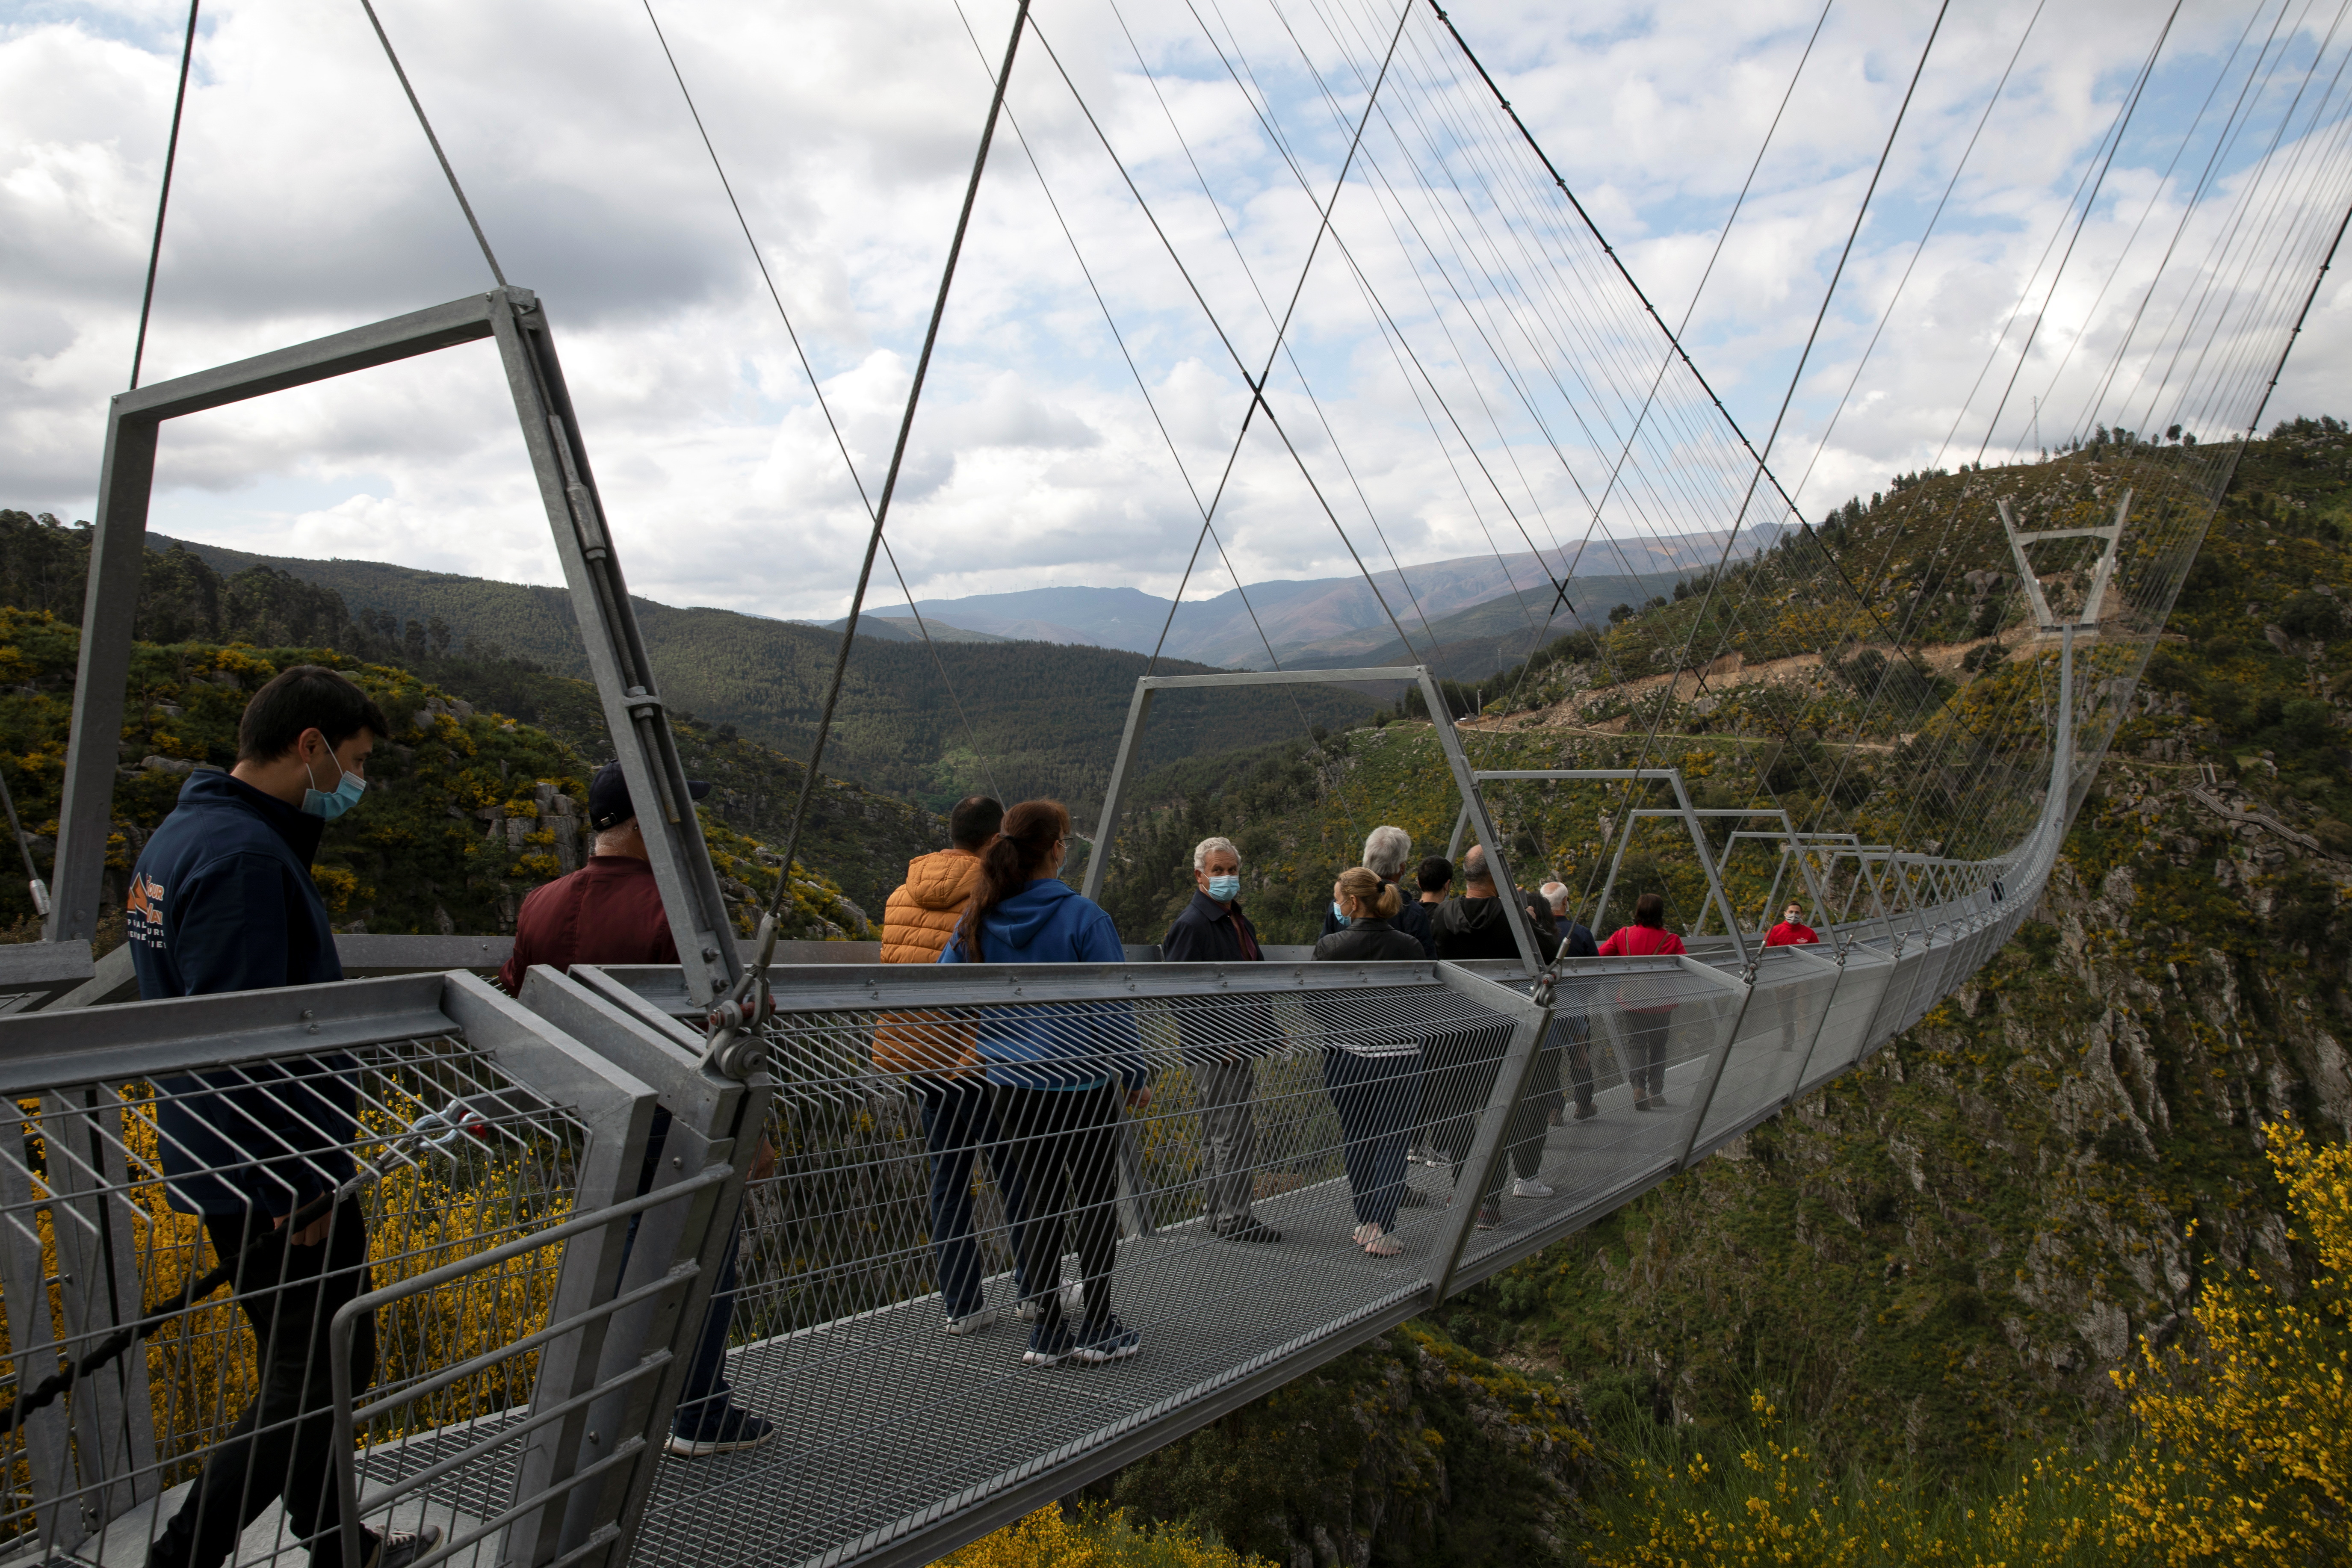 A ponte foi aberta a moradores de região de Arouca. Em breve, estará disponível para visitantes mediante agendamento